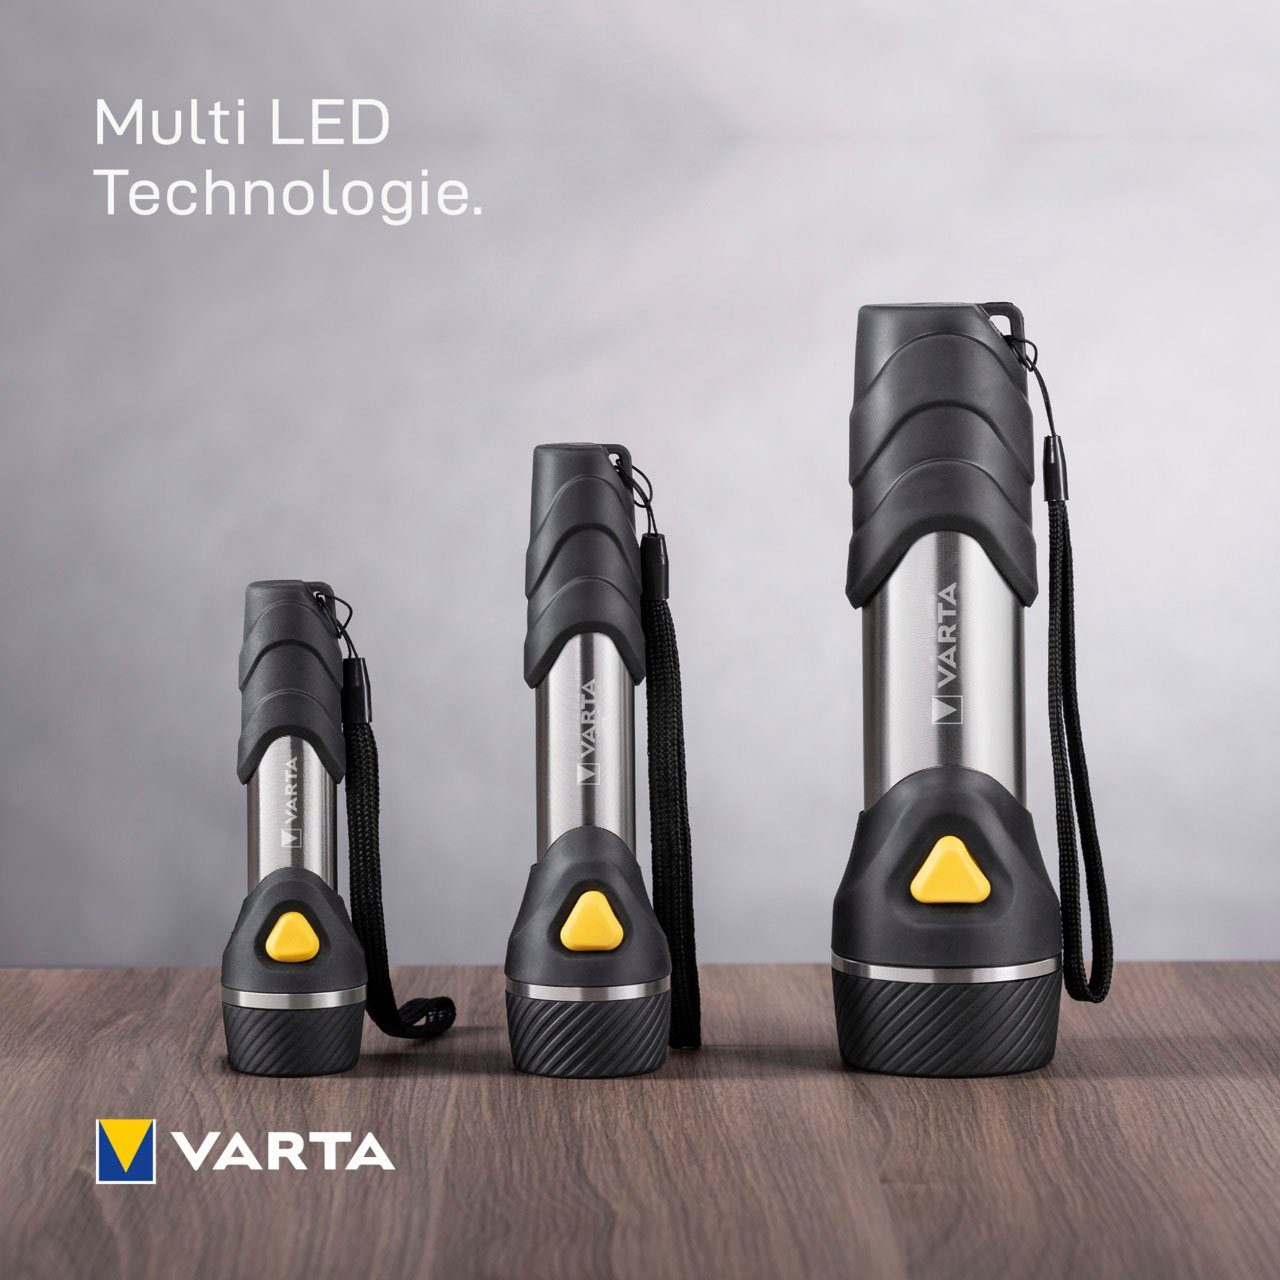 14 TASCHENLAMPE Taschenlampe mit VARTA VARTA LED LEDs F30 Handleuchte DAY MULTI LED LIGHT Light F30 Multi VARTA Day